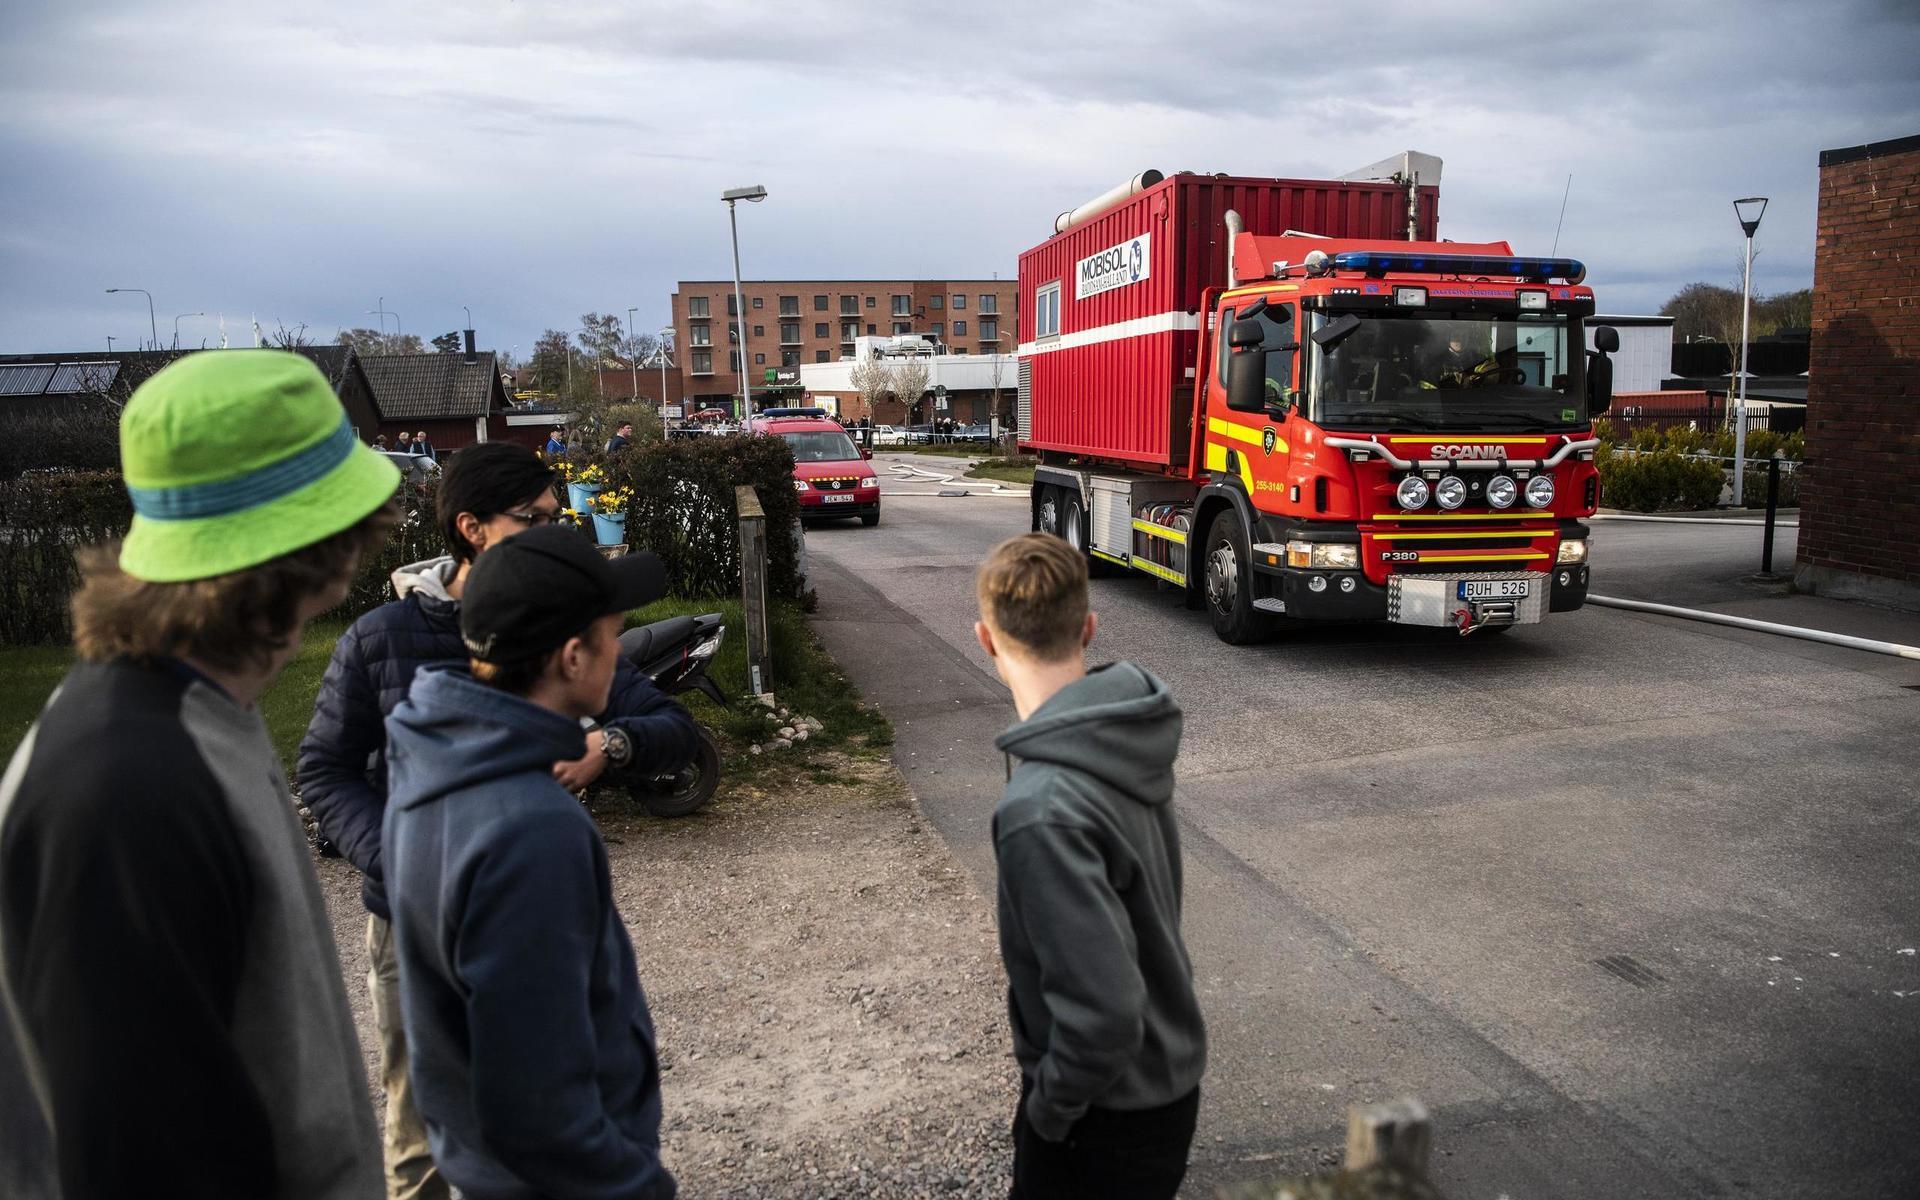 Stor skolbrand i LaholmLaholmVid 17.40 på söndagskvällen fick räddningstjänsten larm om en brand på Osbecksgymnasiet och Lagaholmsskolan i Laholm. Branden har varit omfattande och tolv brandkårsenheter har jobbat på platsen.